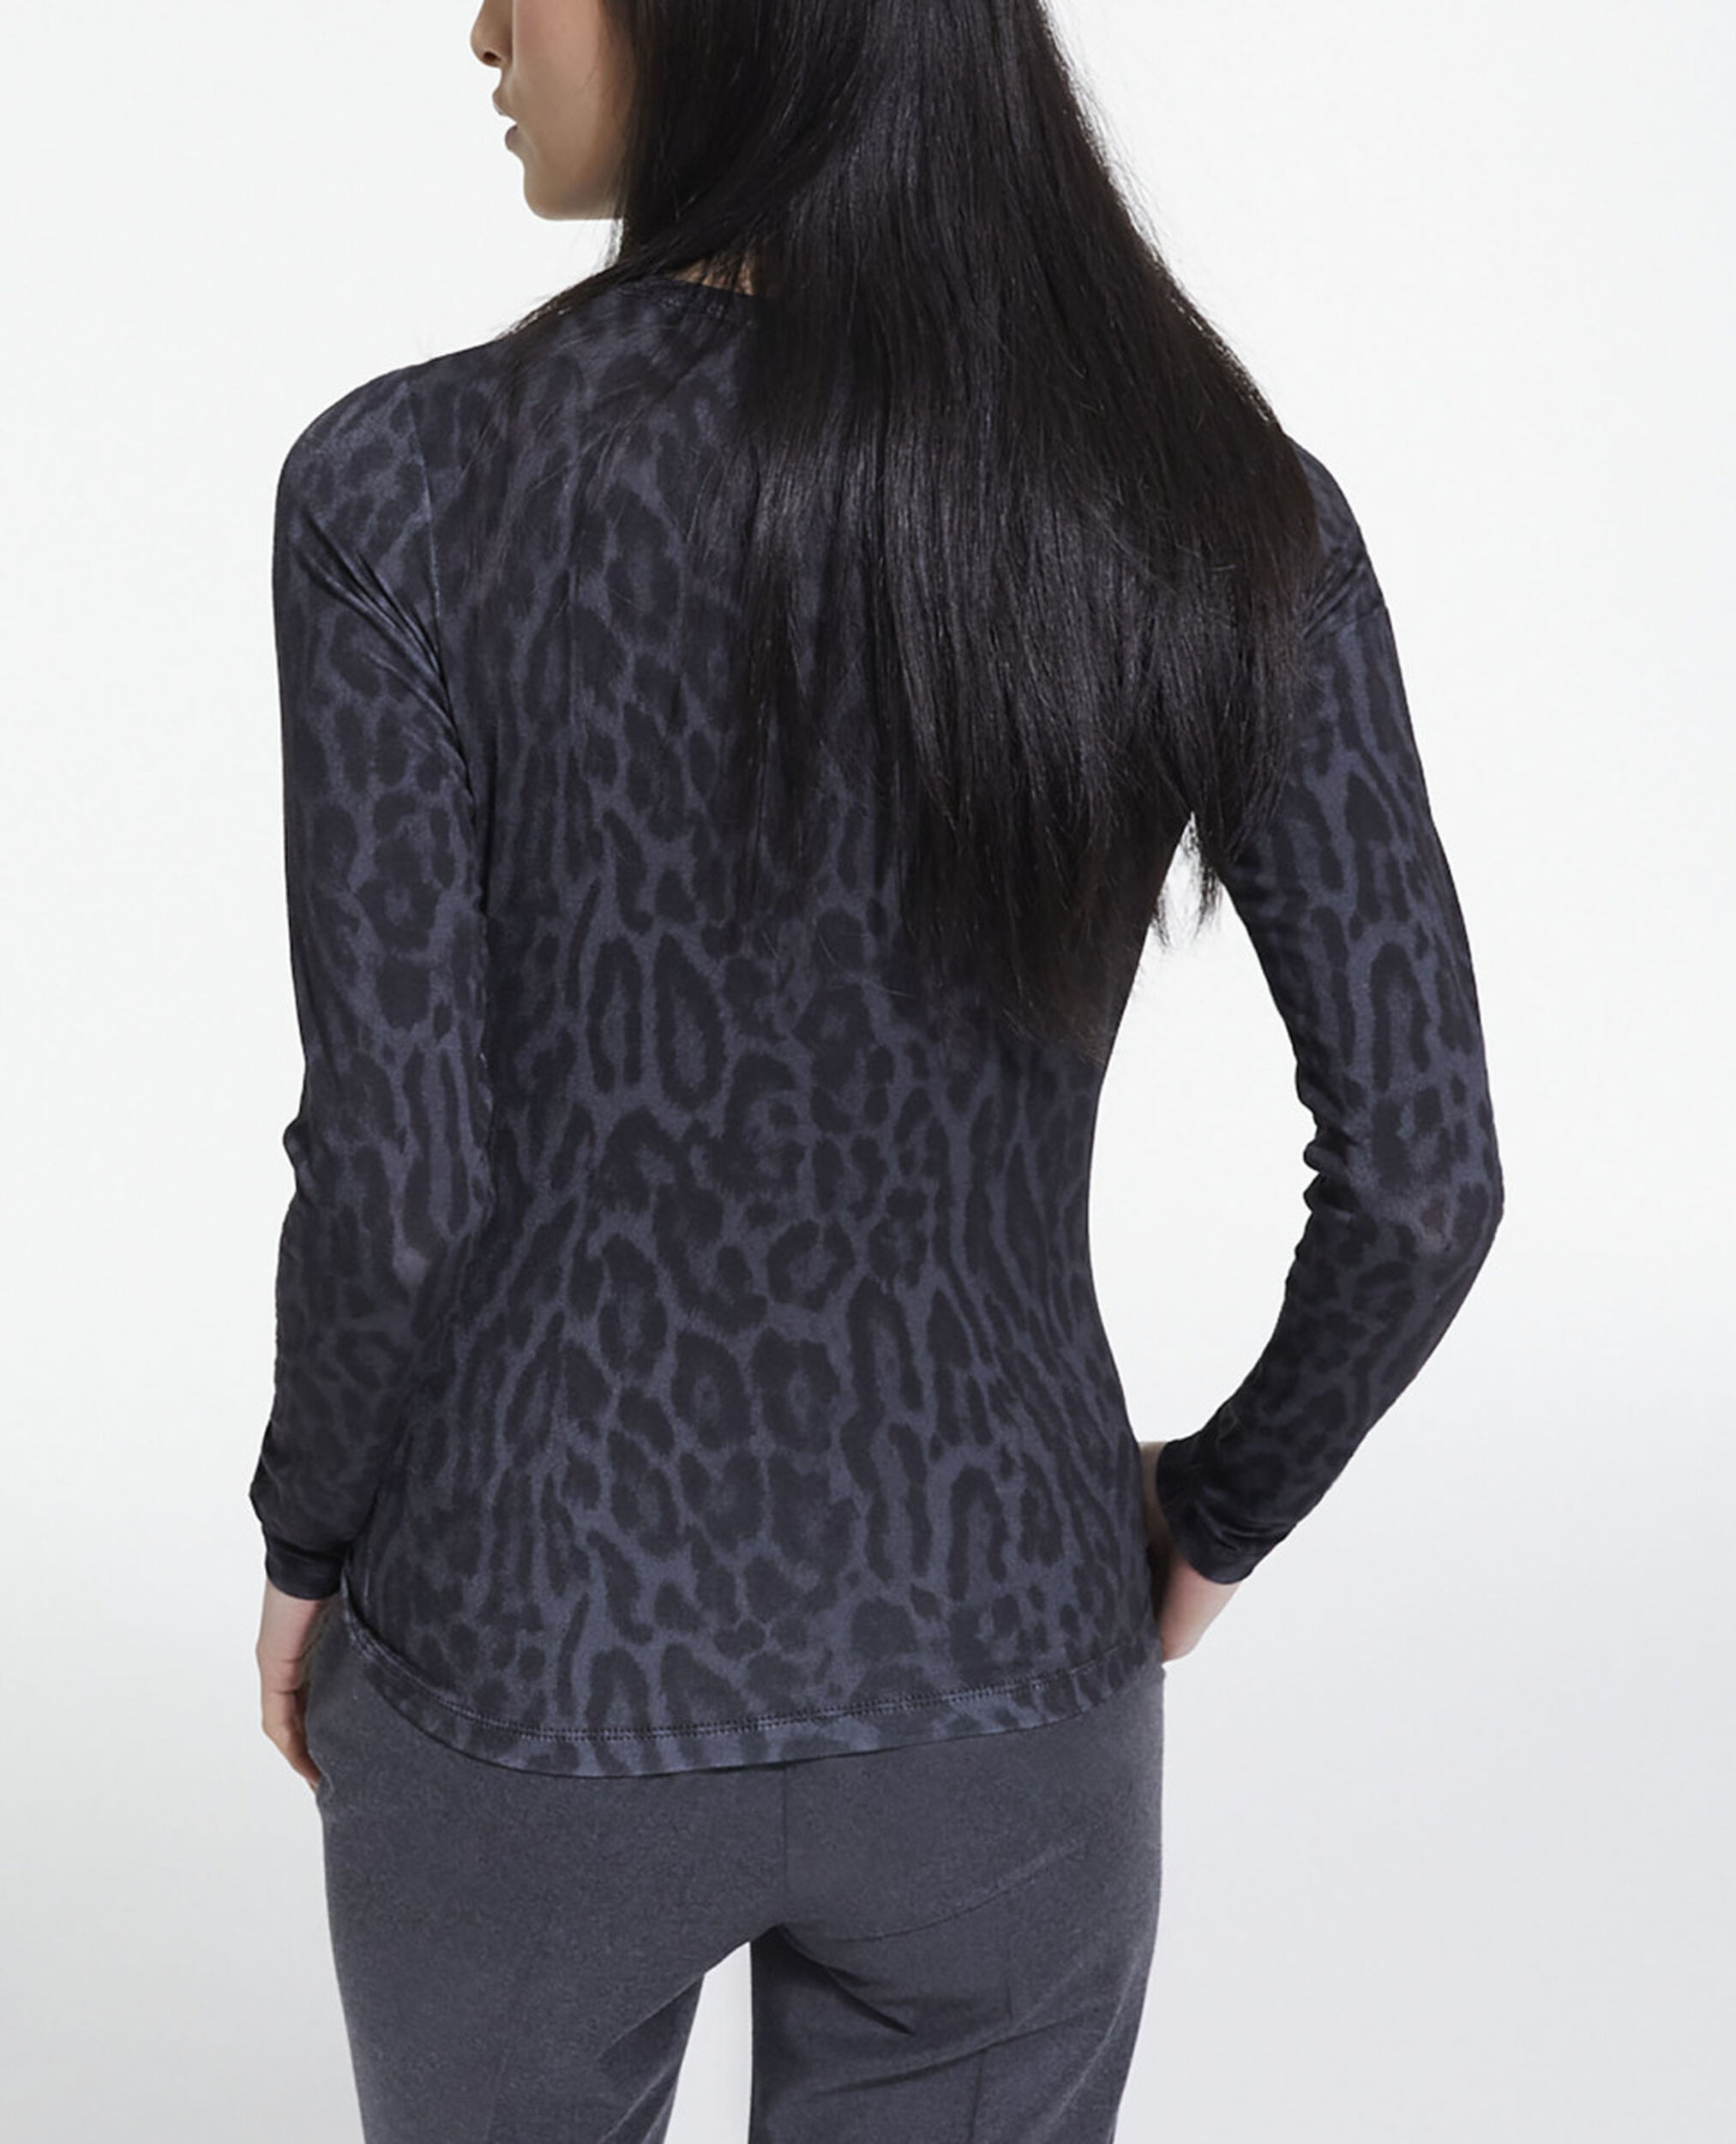 Camiseta algodón leopardo gris, BLACK, hi-res image number null